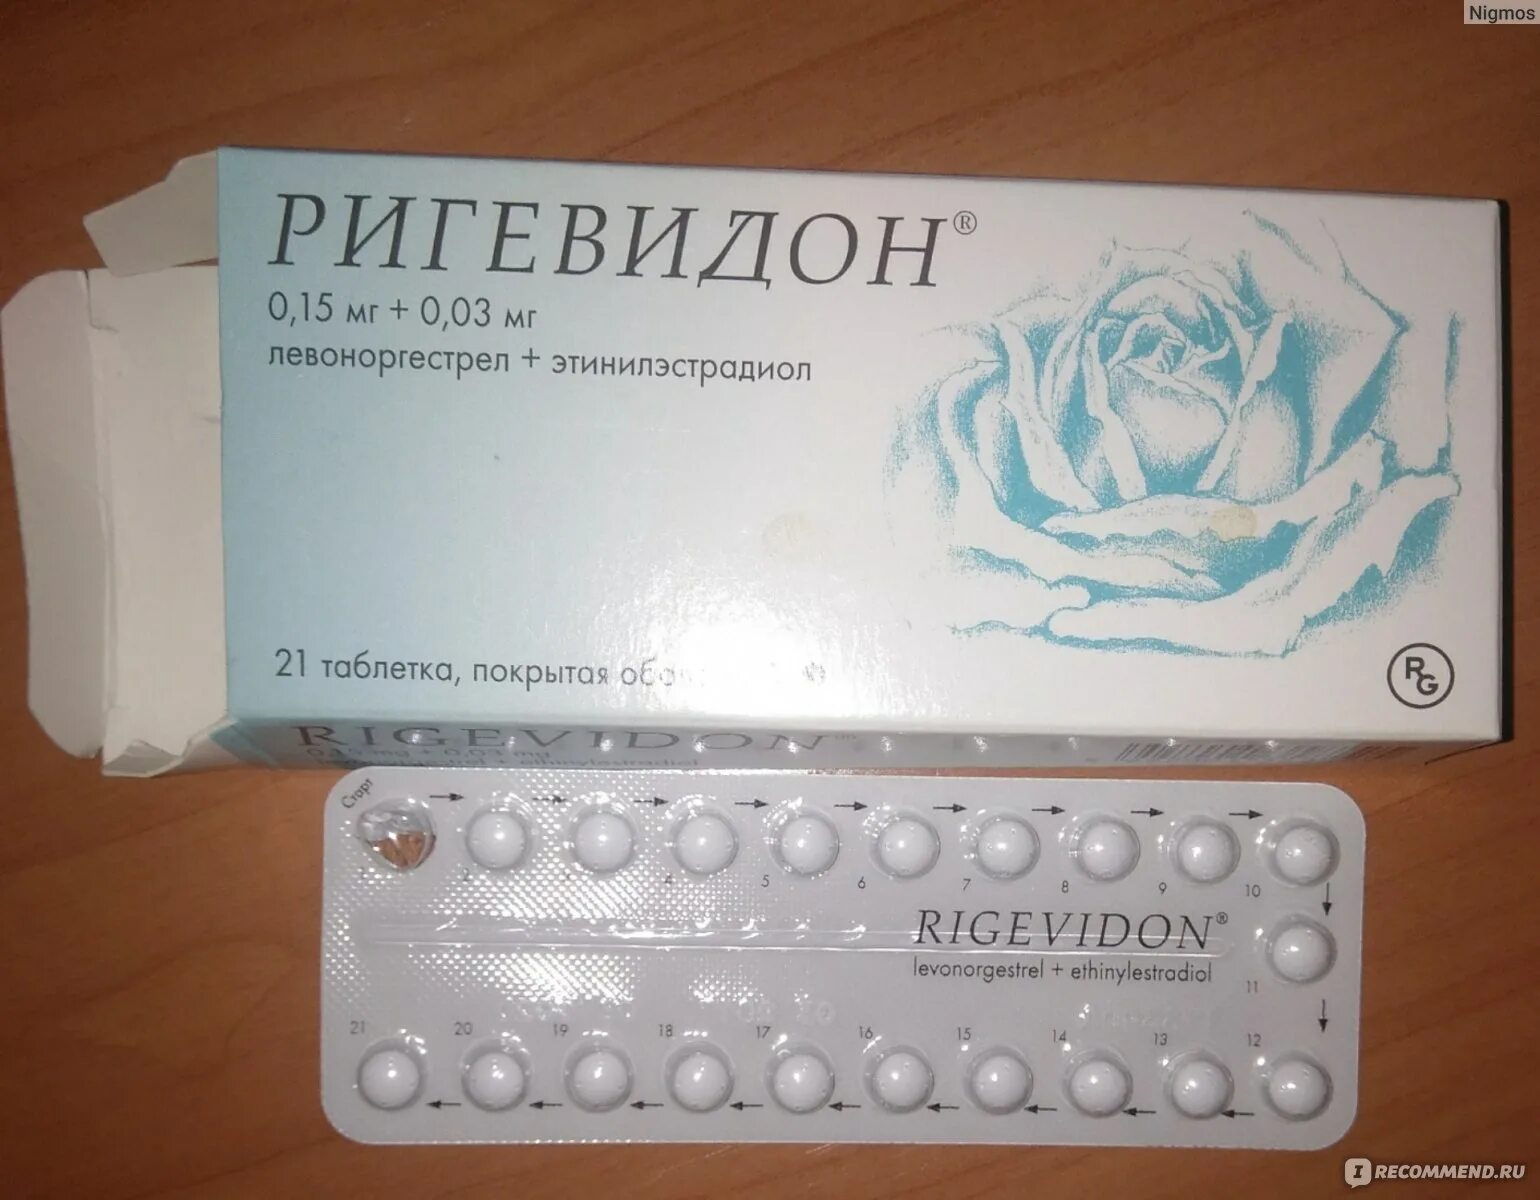 Противозачаточные таблетки ригевидон. Гормональный препарат ригевидон. Противозачаточные таблетки для женщин ригевидон. Таблетки противозачаточные реговидон. Во время приема противозачаточных начались